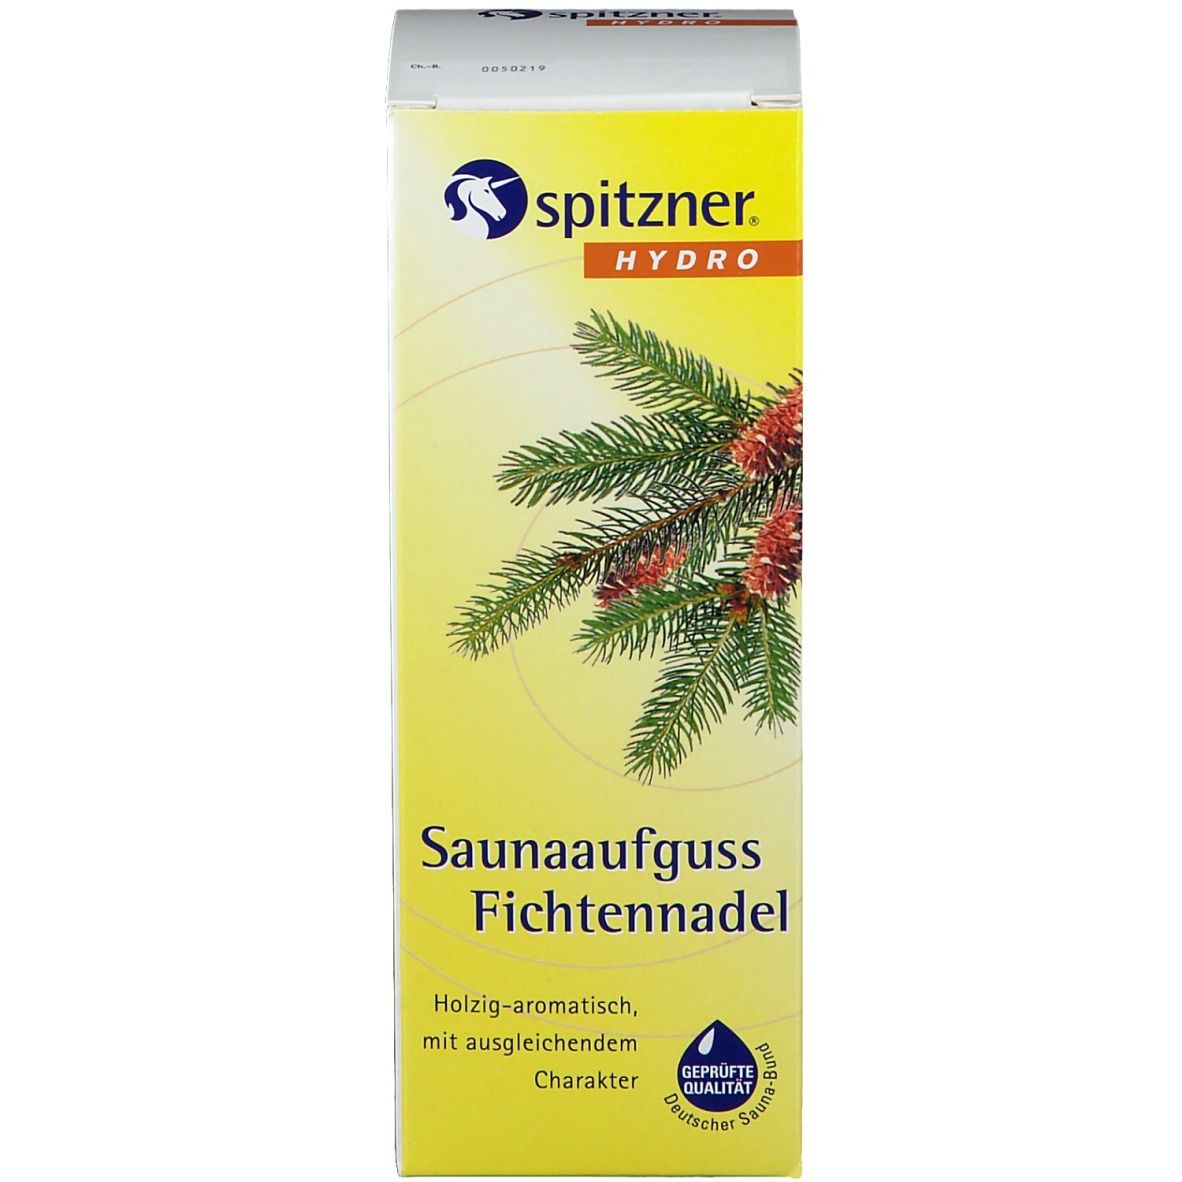 Spitzner® Hydro Saunaaufguss Fichtennadel